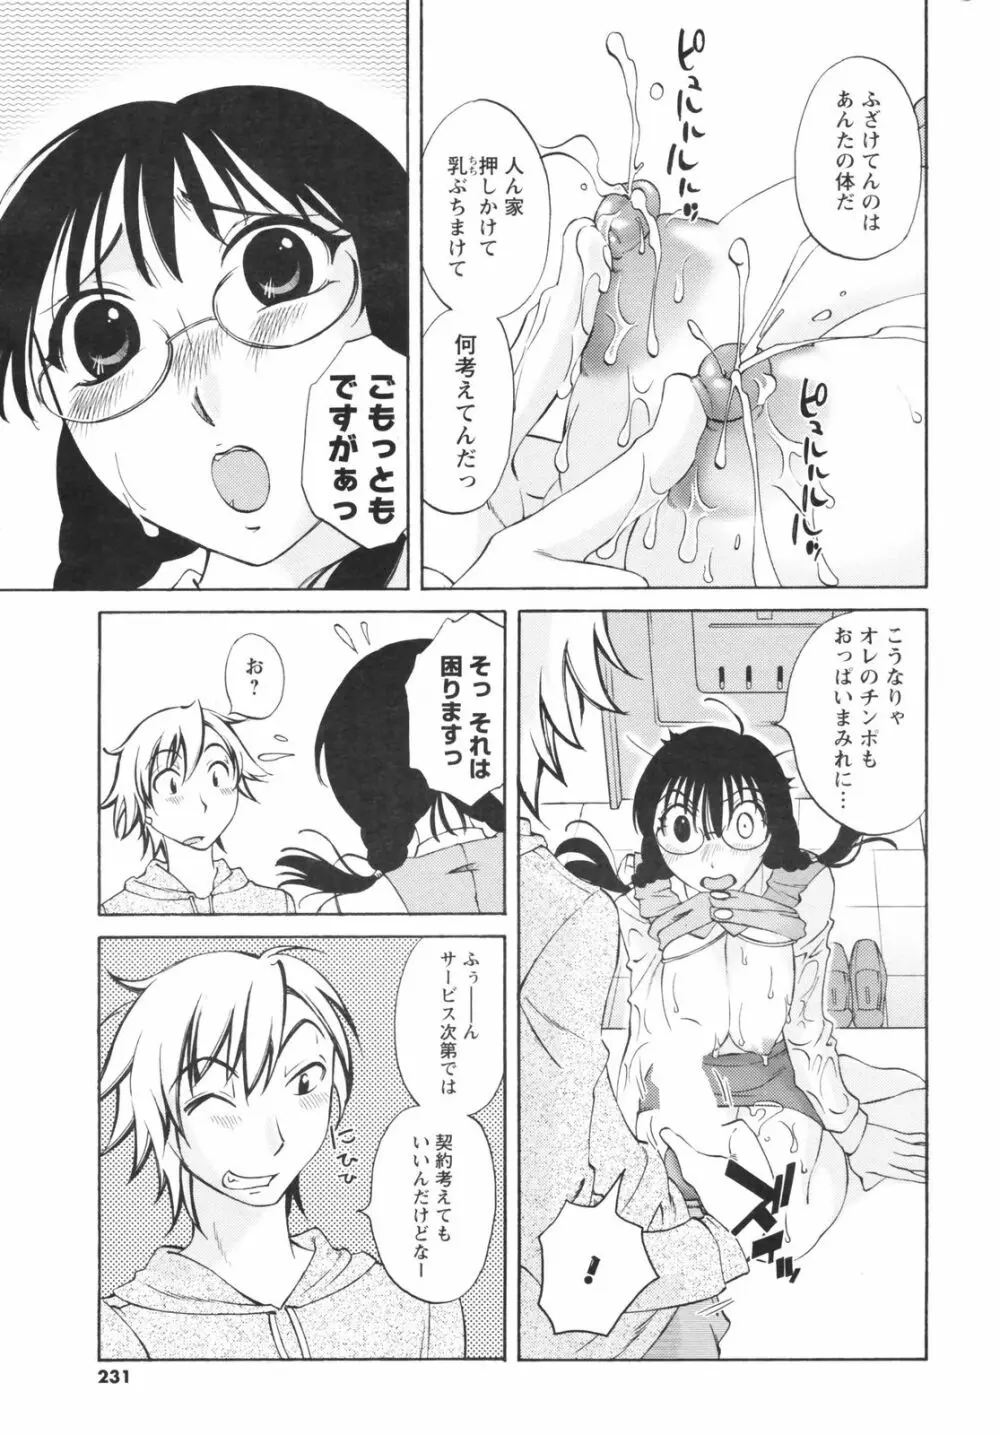 メンズヤングスペシャルIKAZUCHI雷 Vol.5 2008年3月号増刊 231ページ